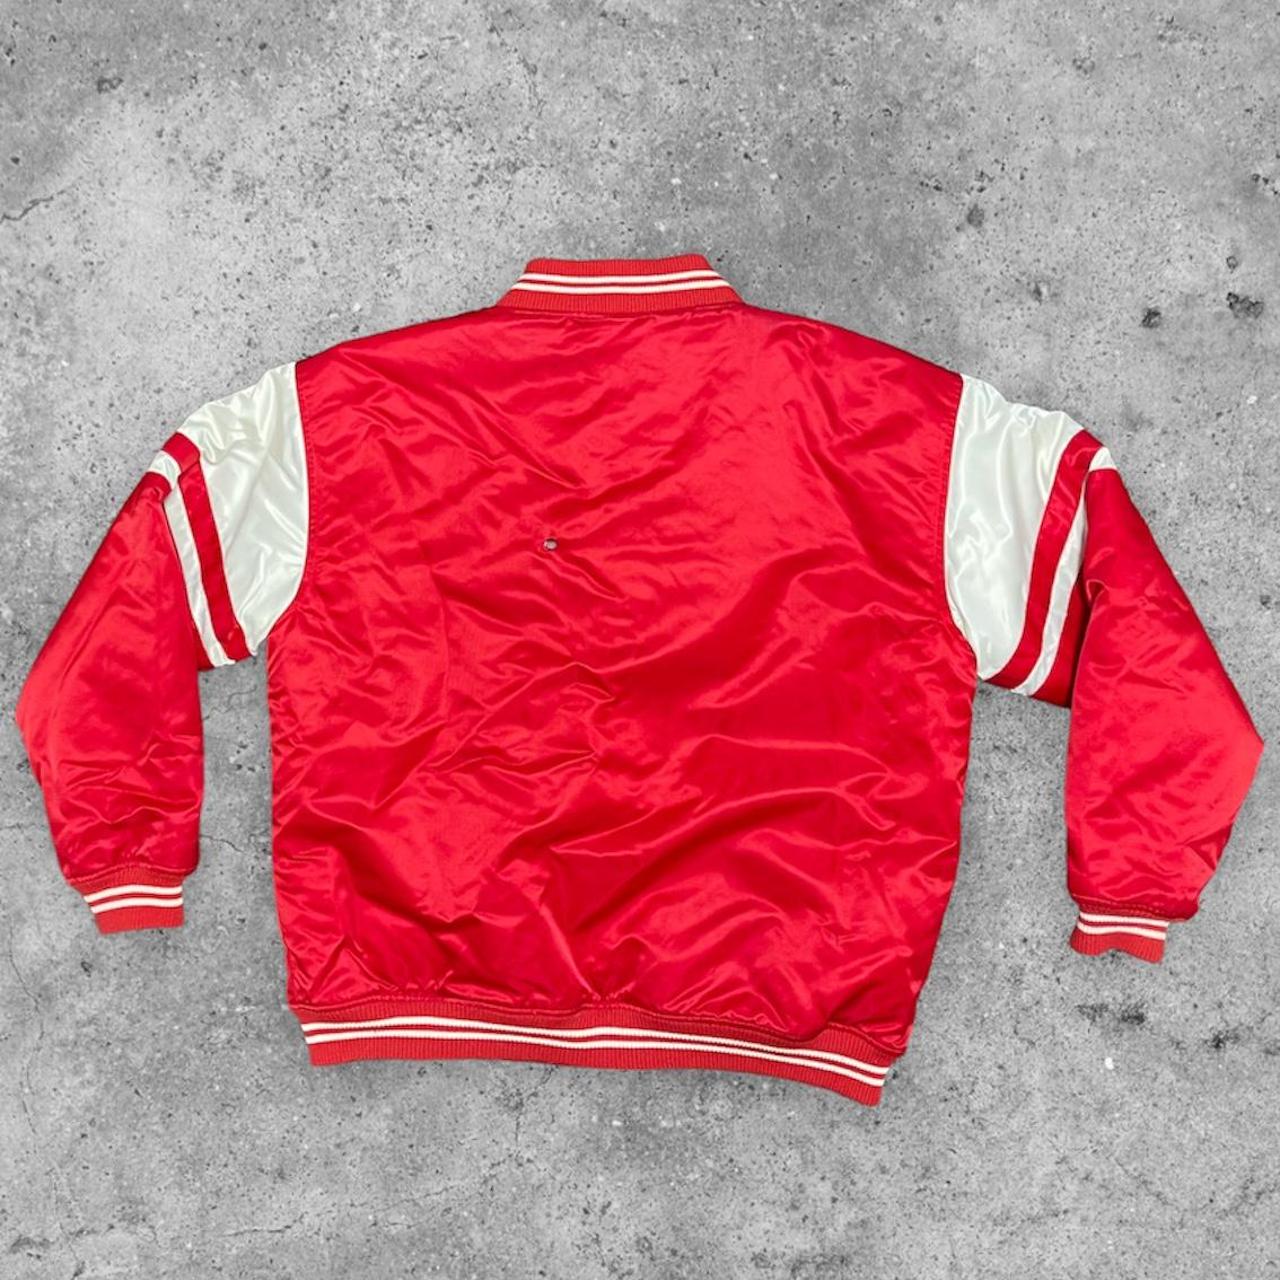 NHL Men's Jacket - Red - L